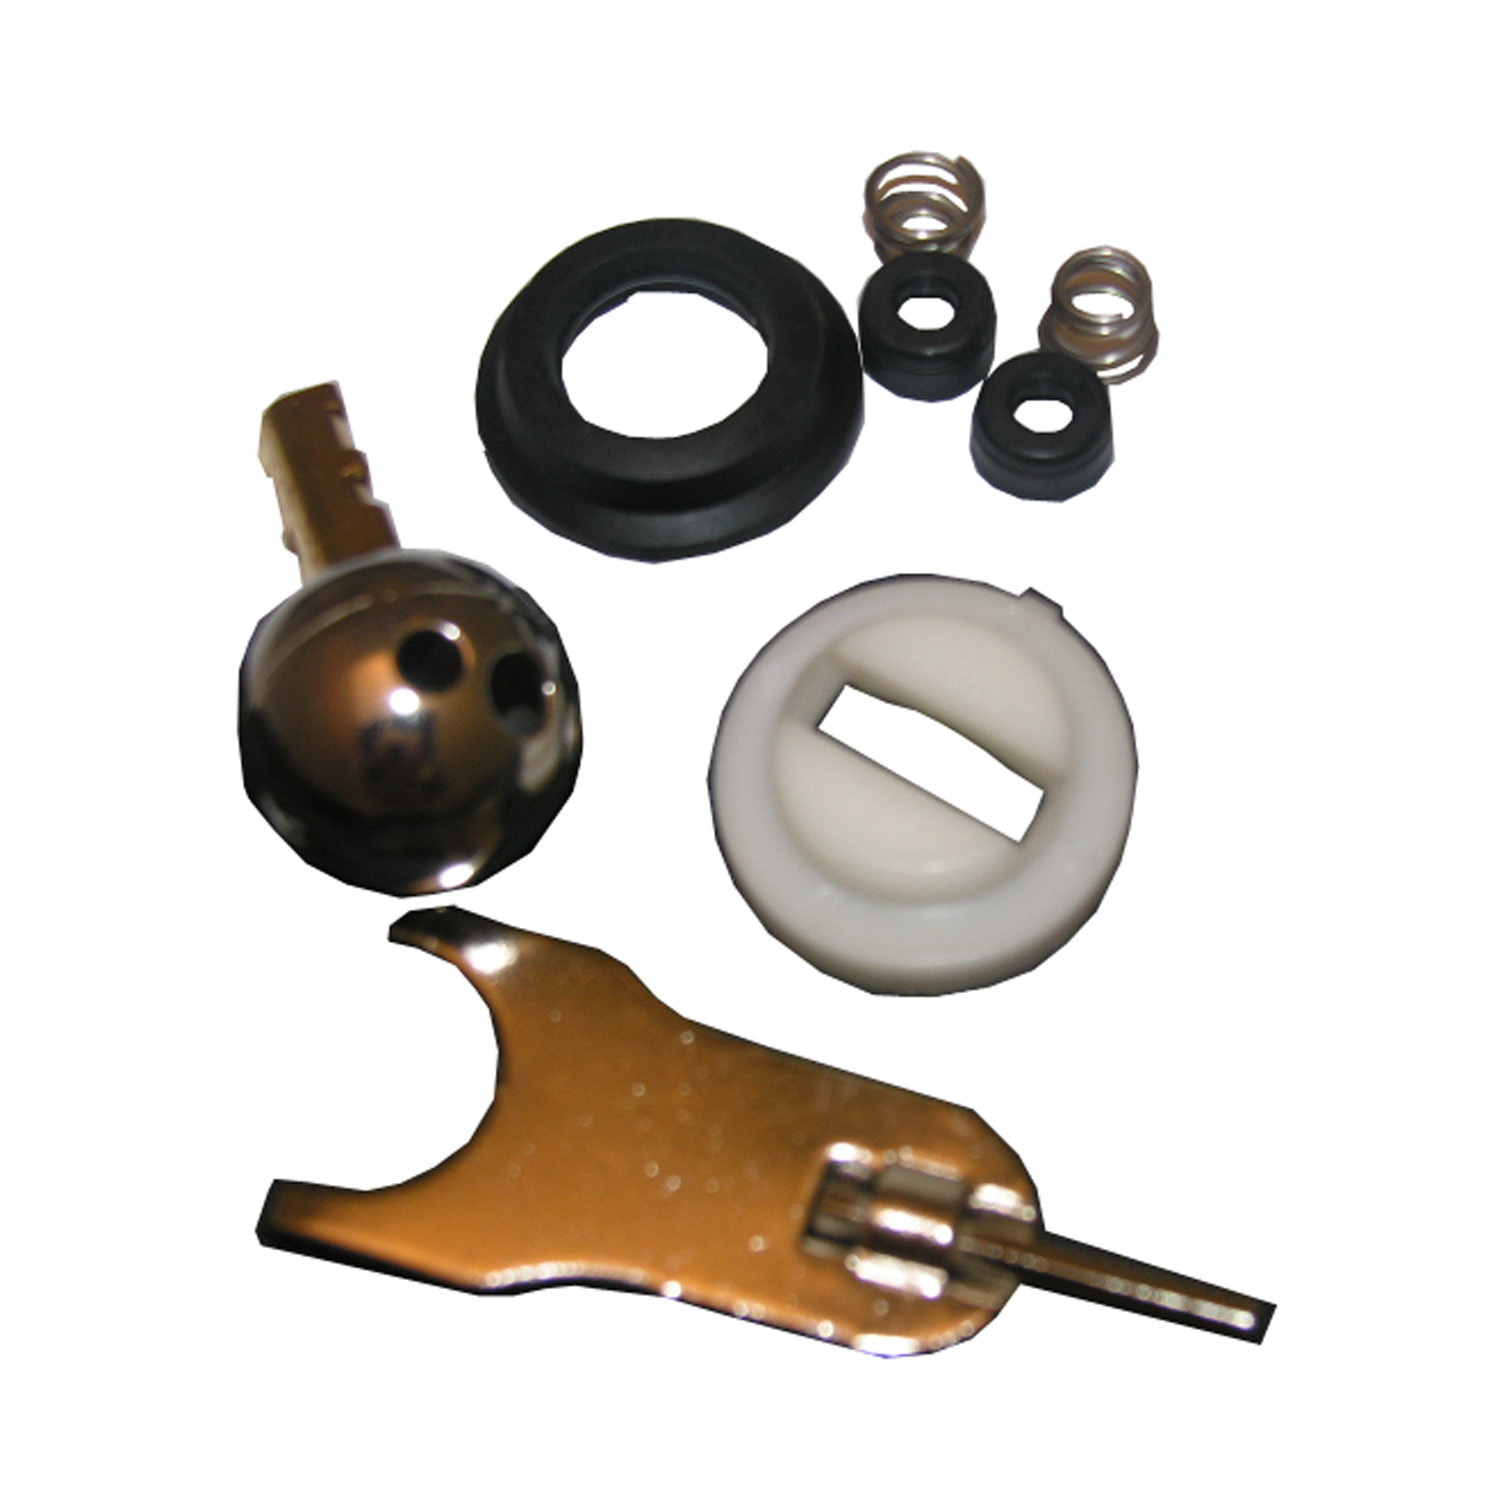 Lasco 0-2997 Faucet Repair Kit, For: Delta Plastic Handle Kitchen and Bath